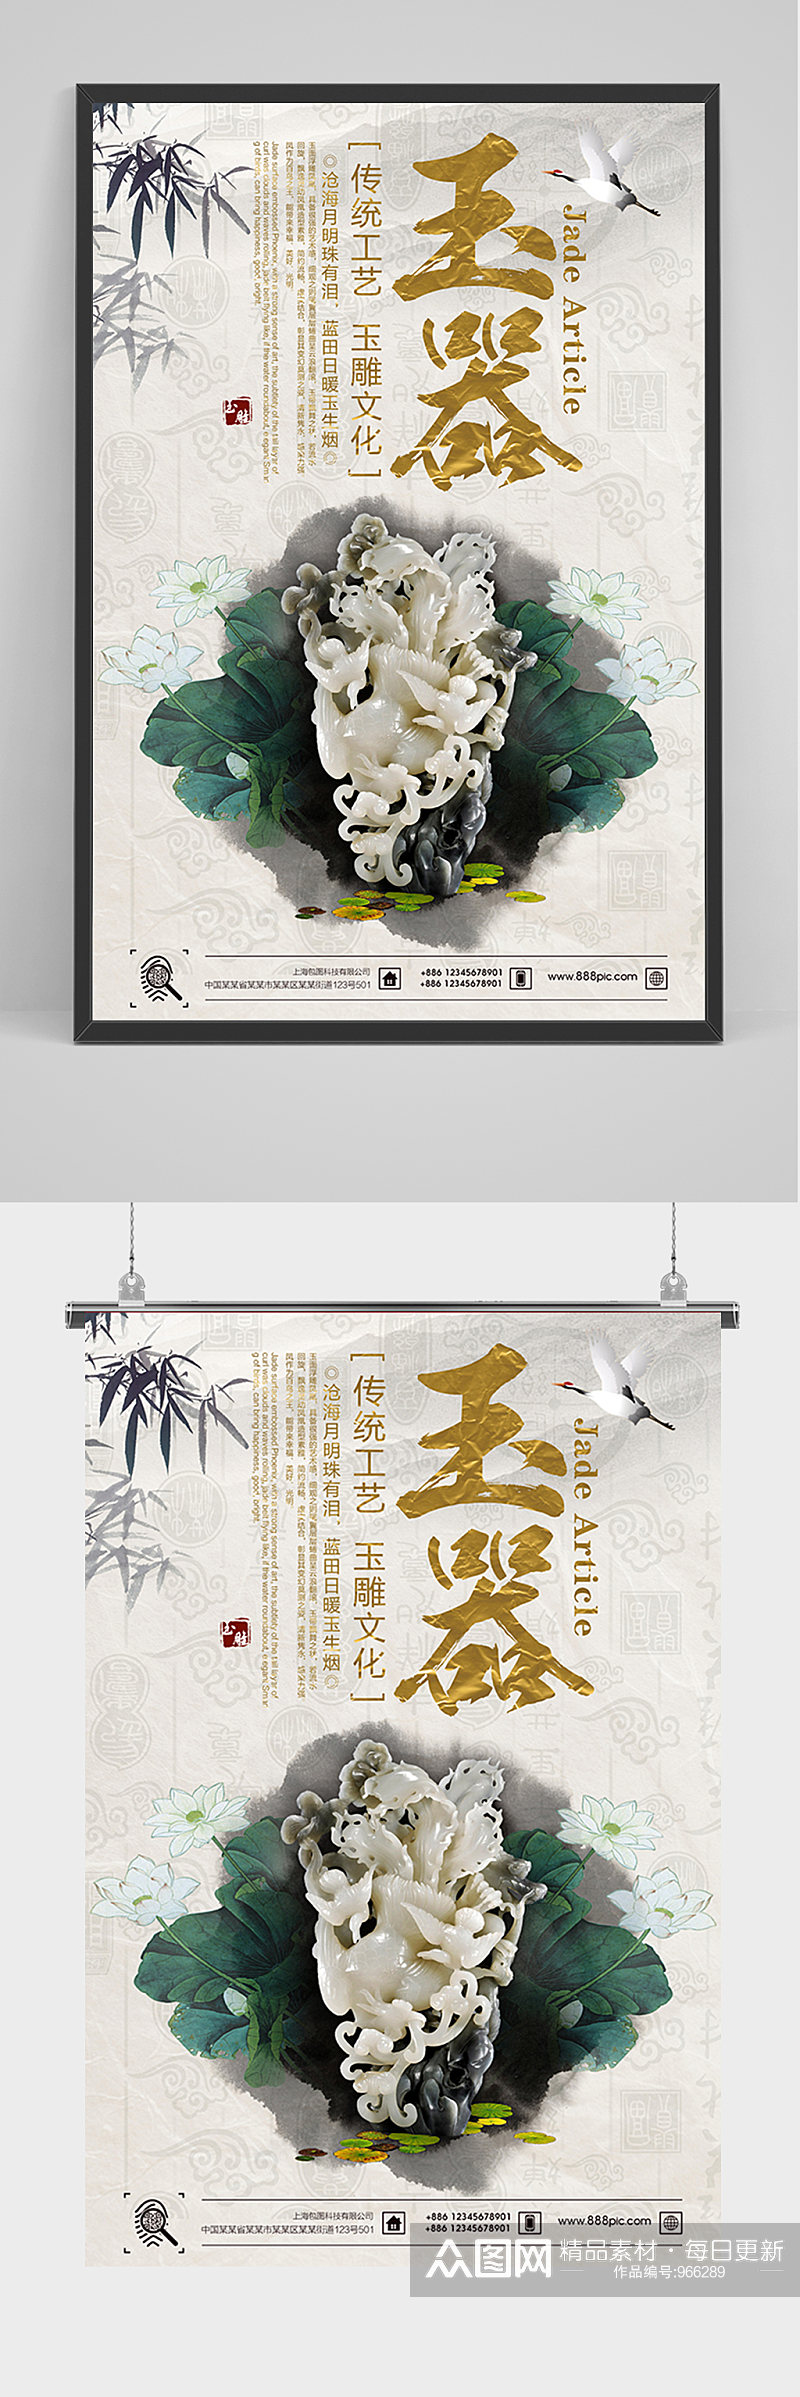 中国风玉器宣传海报素材